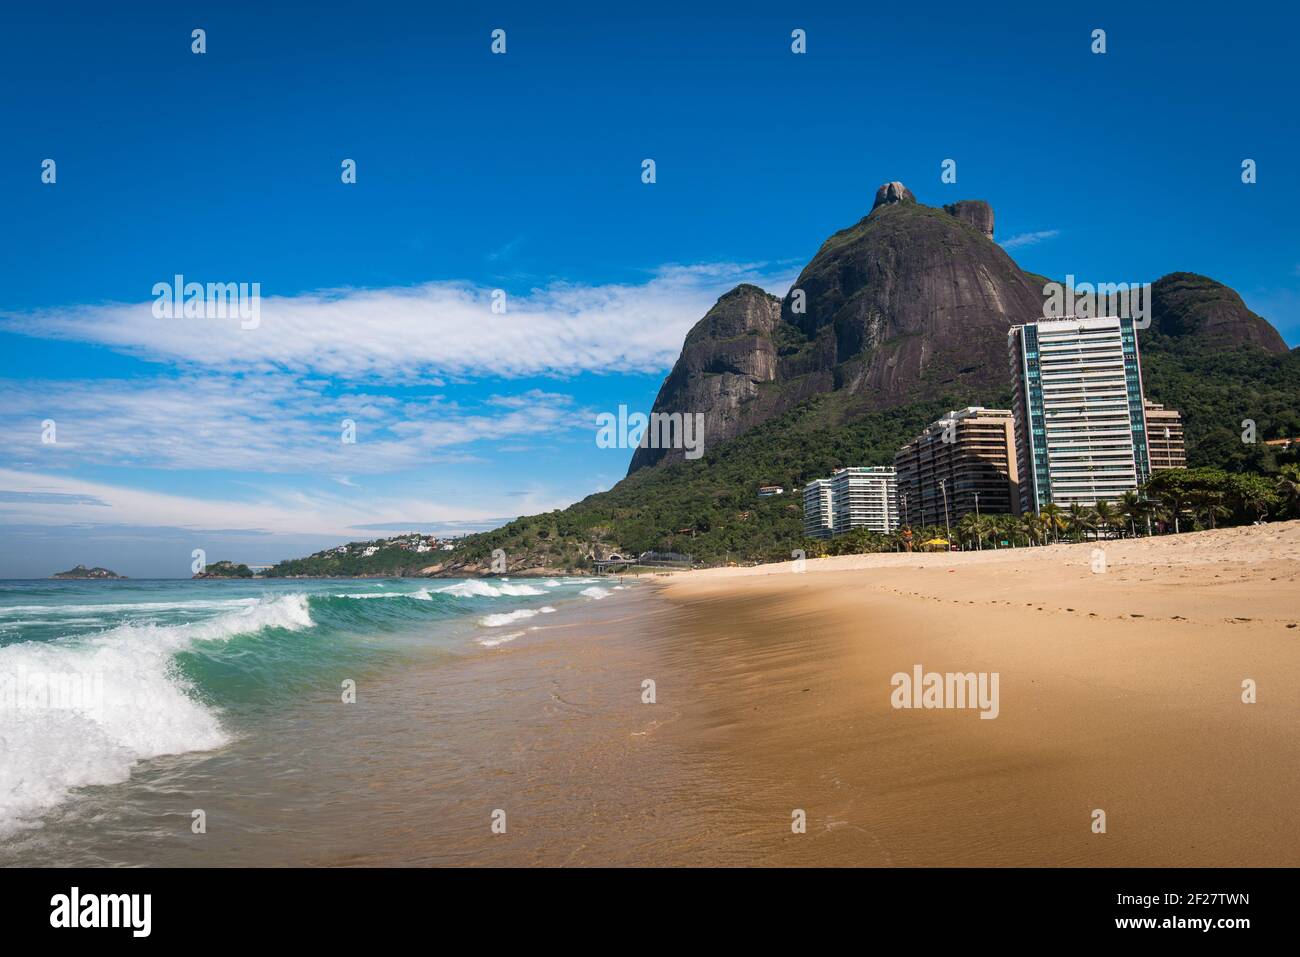 Belle vue sur la plage de Sao Conrado avec paysage de montagne et luxe Immeubles d'appartements Banque D'Images